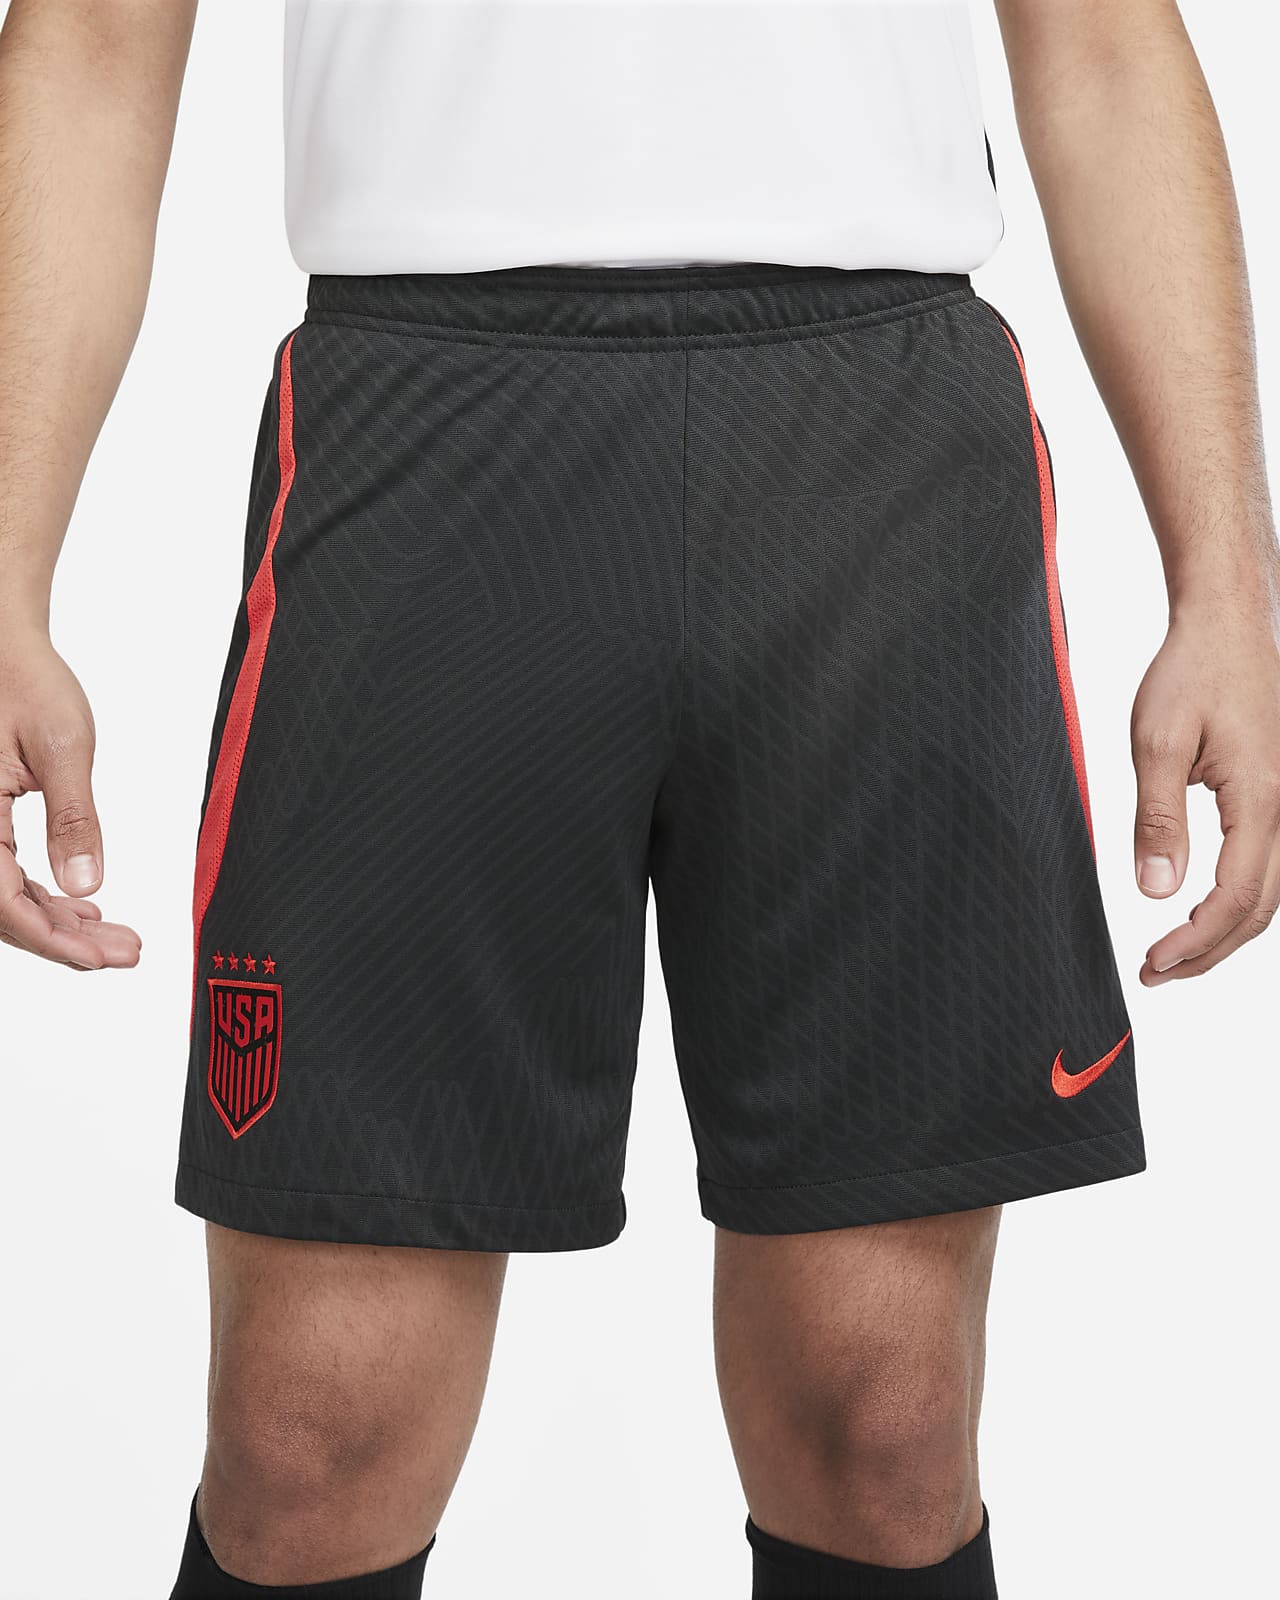 Short deportivo hombre tejido texturizado - TRICOT